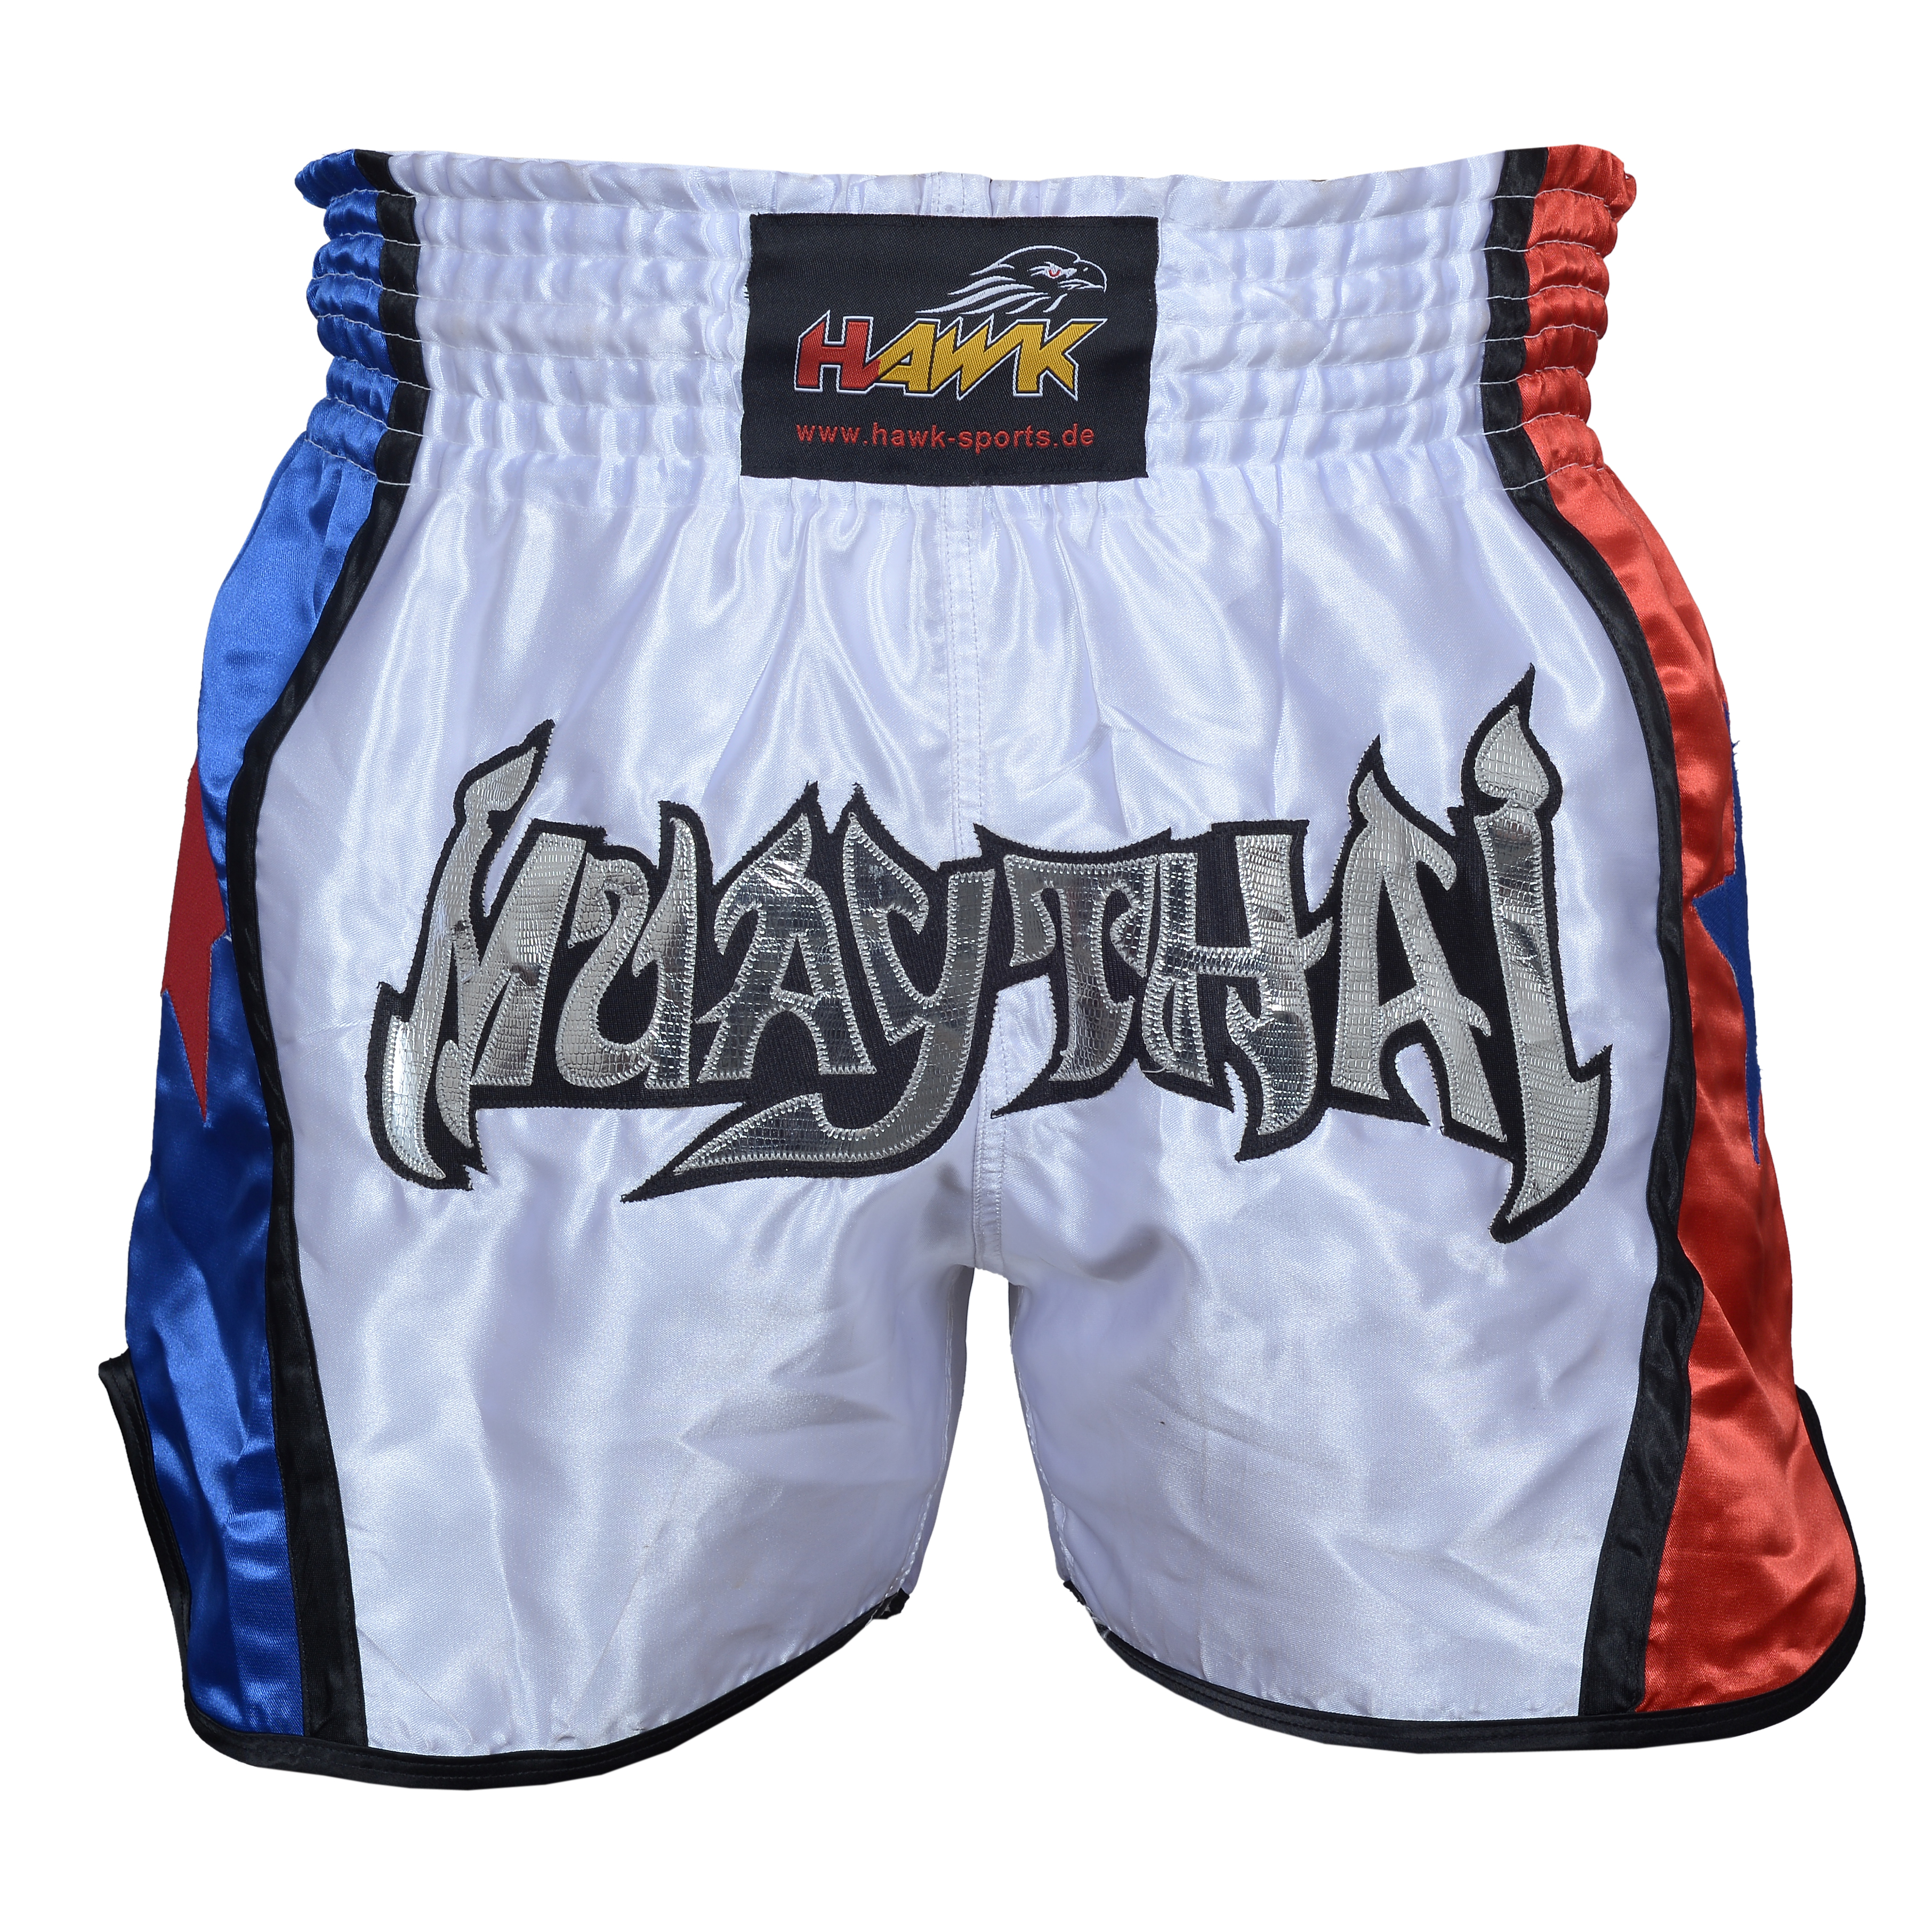 FIGHTERS - Pantalones Muay Thai / Croacia-Hrvatska / Elite / Medium